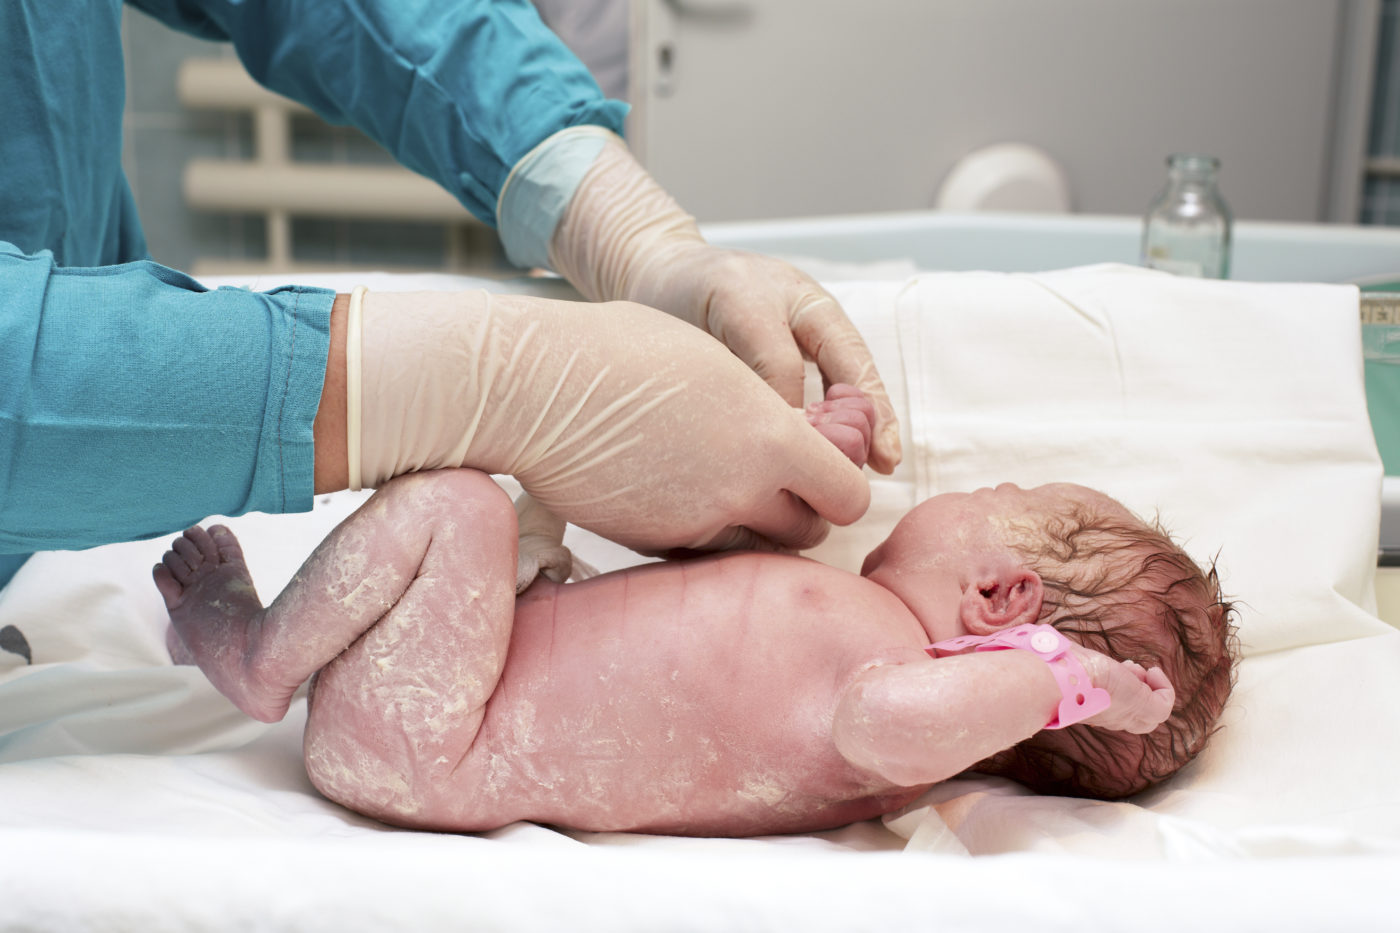 Bébé est né : tout savoir sur les premiers soins !